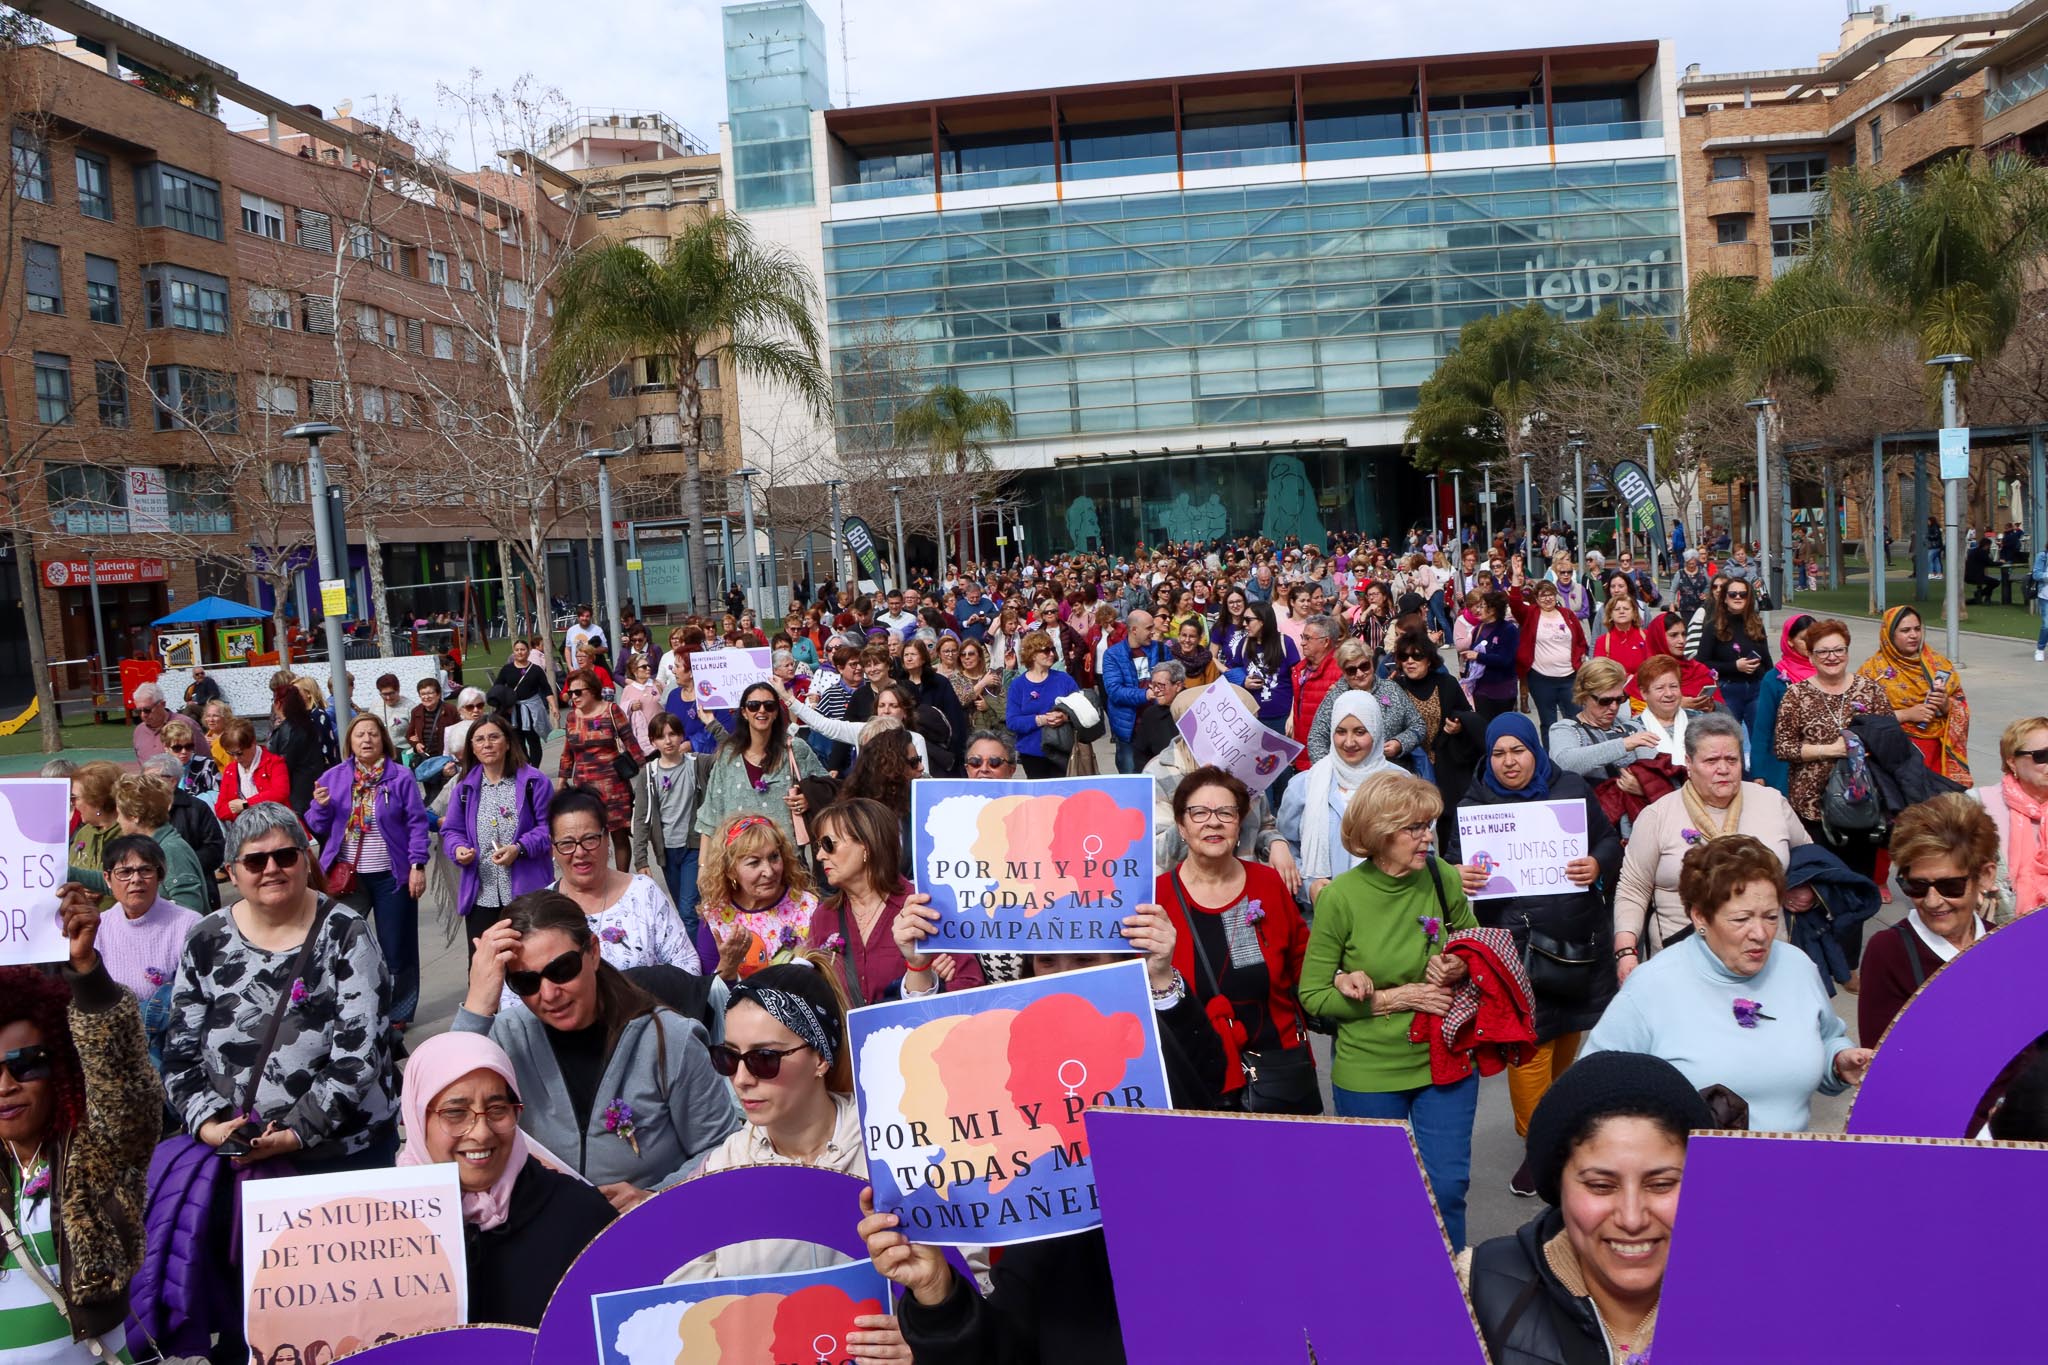 Torrent marcha por la igualdad en el Día Internacional de las Mujeres